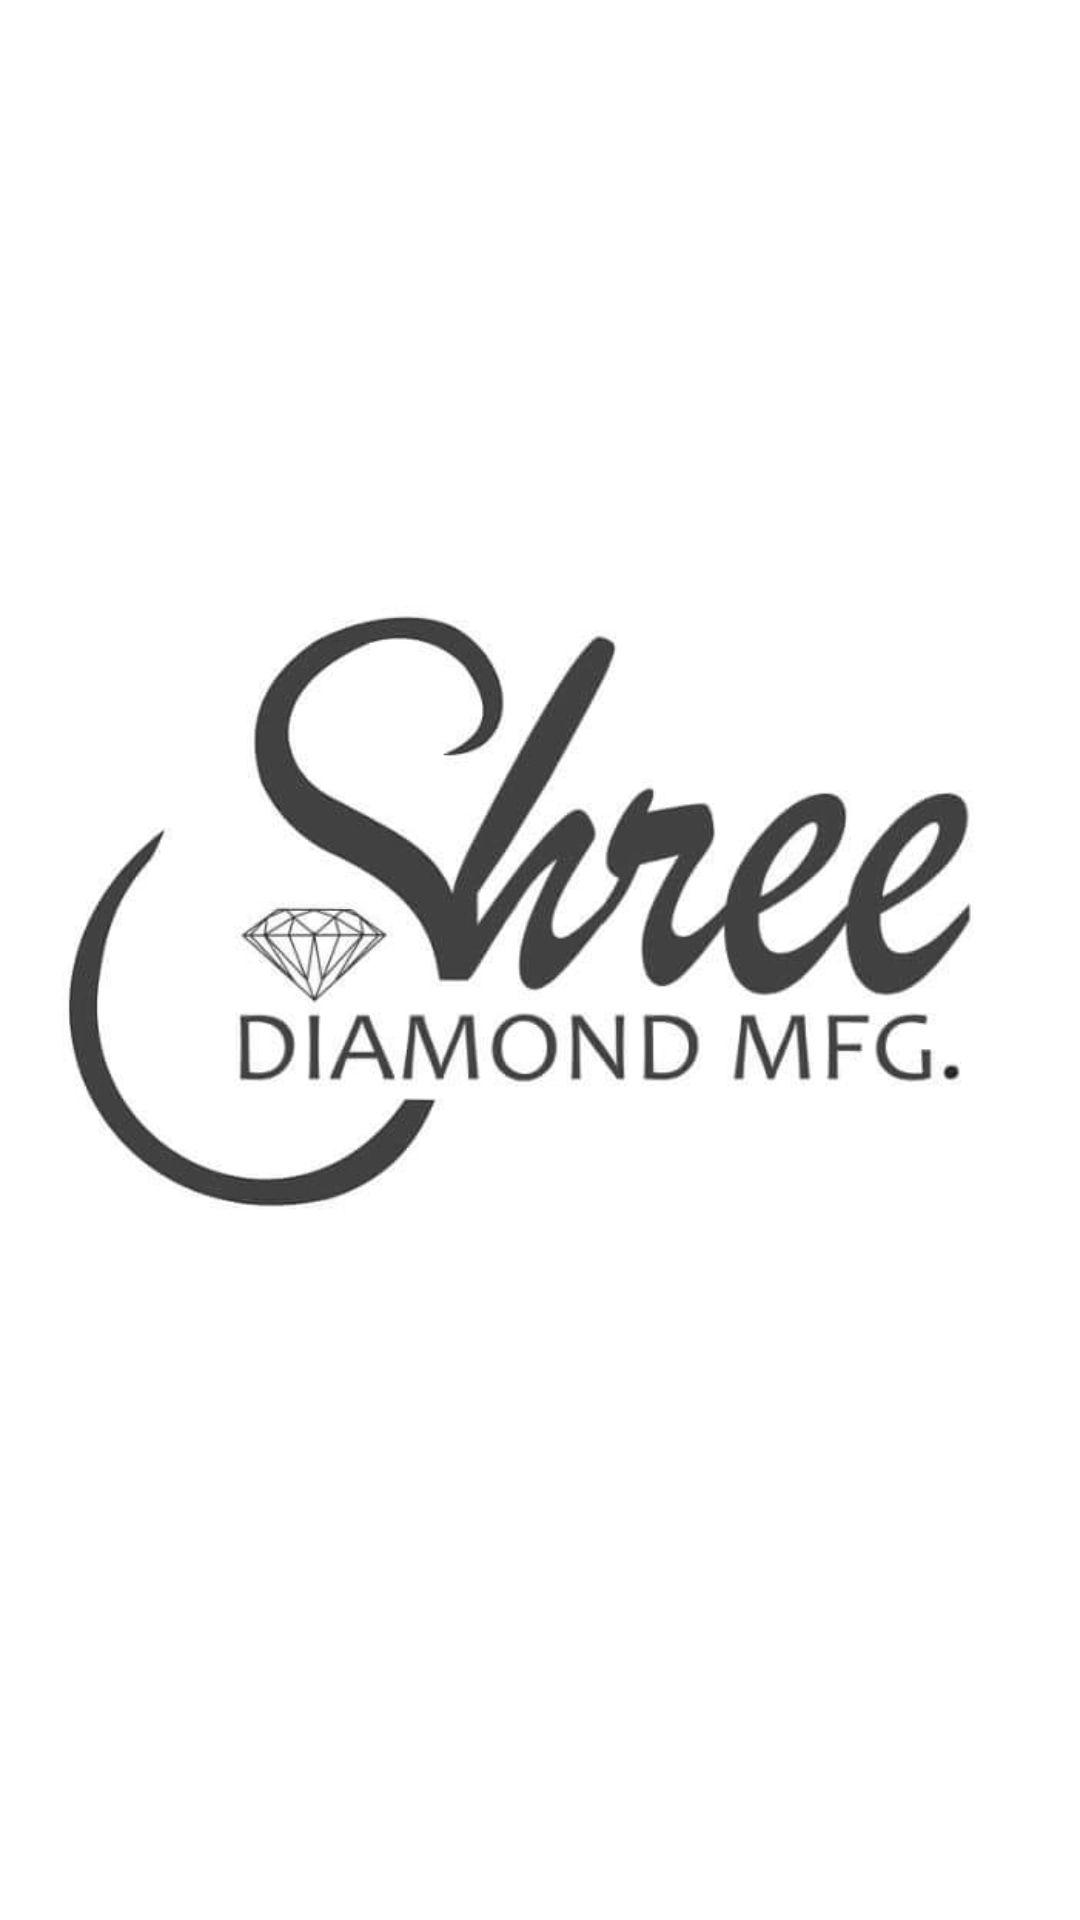 Shree Diamond